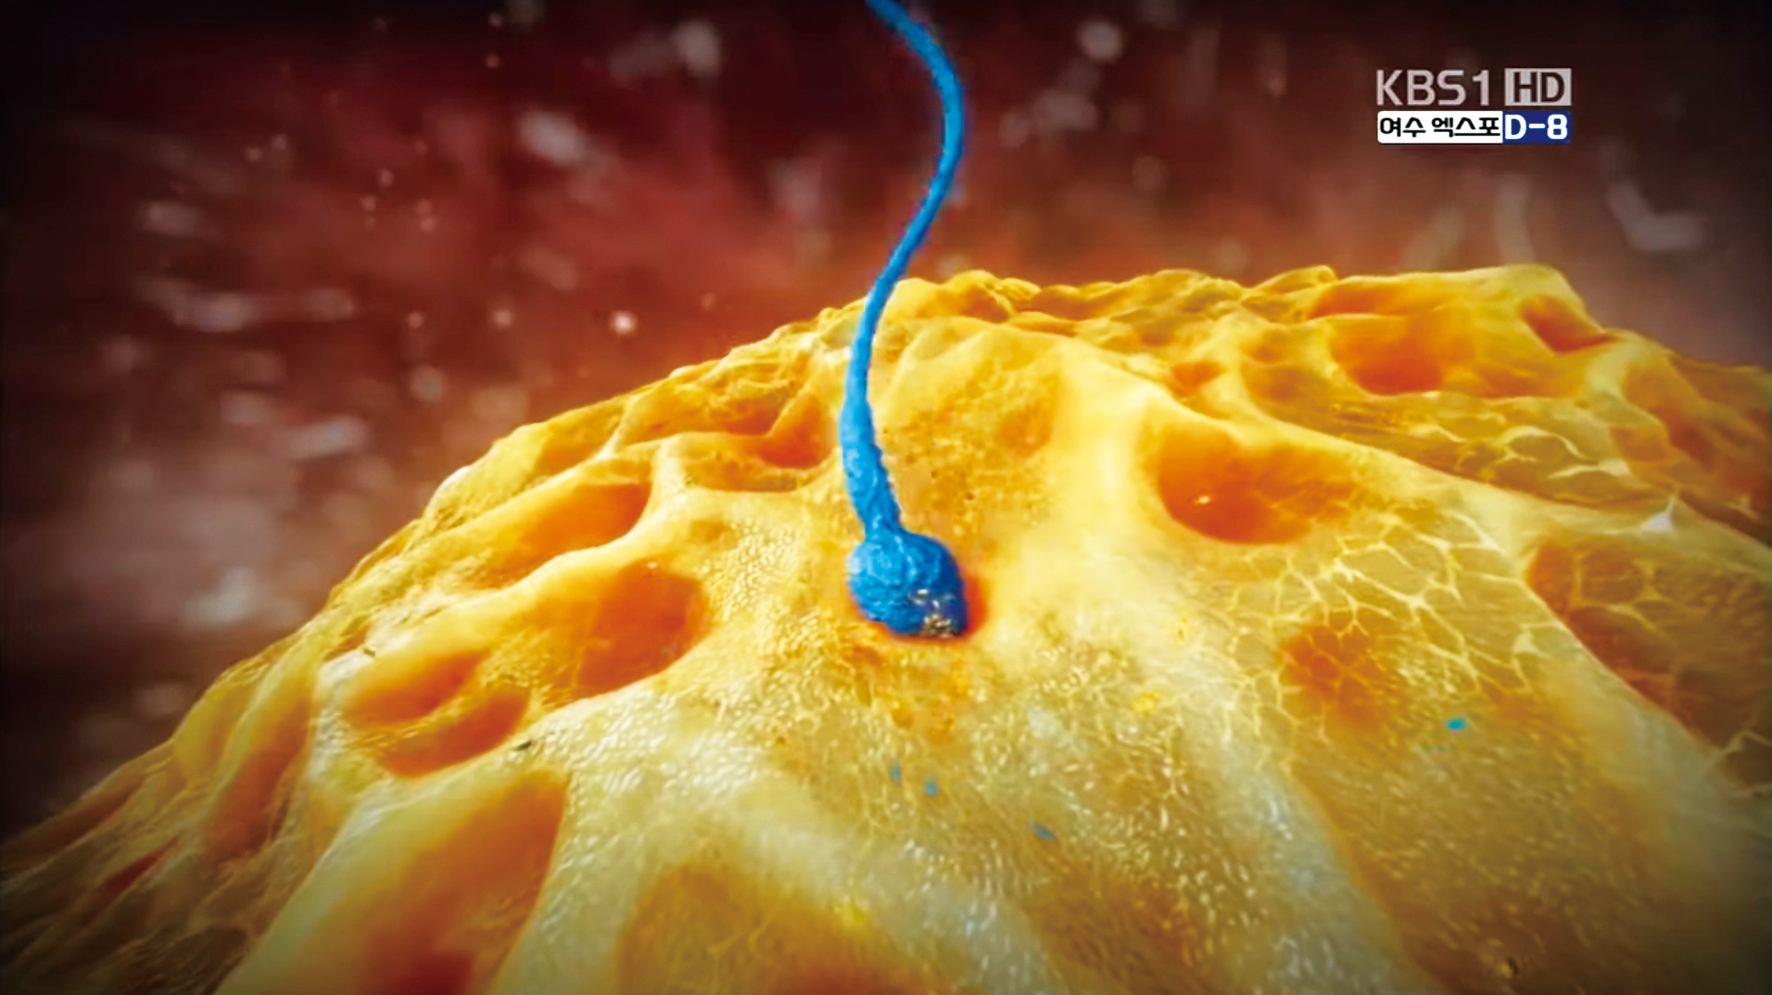 (2023봄여름호_2.지키다1_사진1)정자가 난자 속으로 파고 들어가는 순간, KBS 1TV 3D 의학다큐멘터리 ‘태아’ 캡쳐